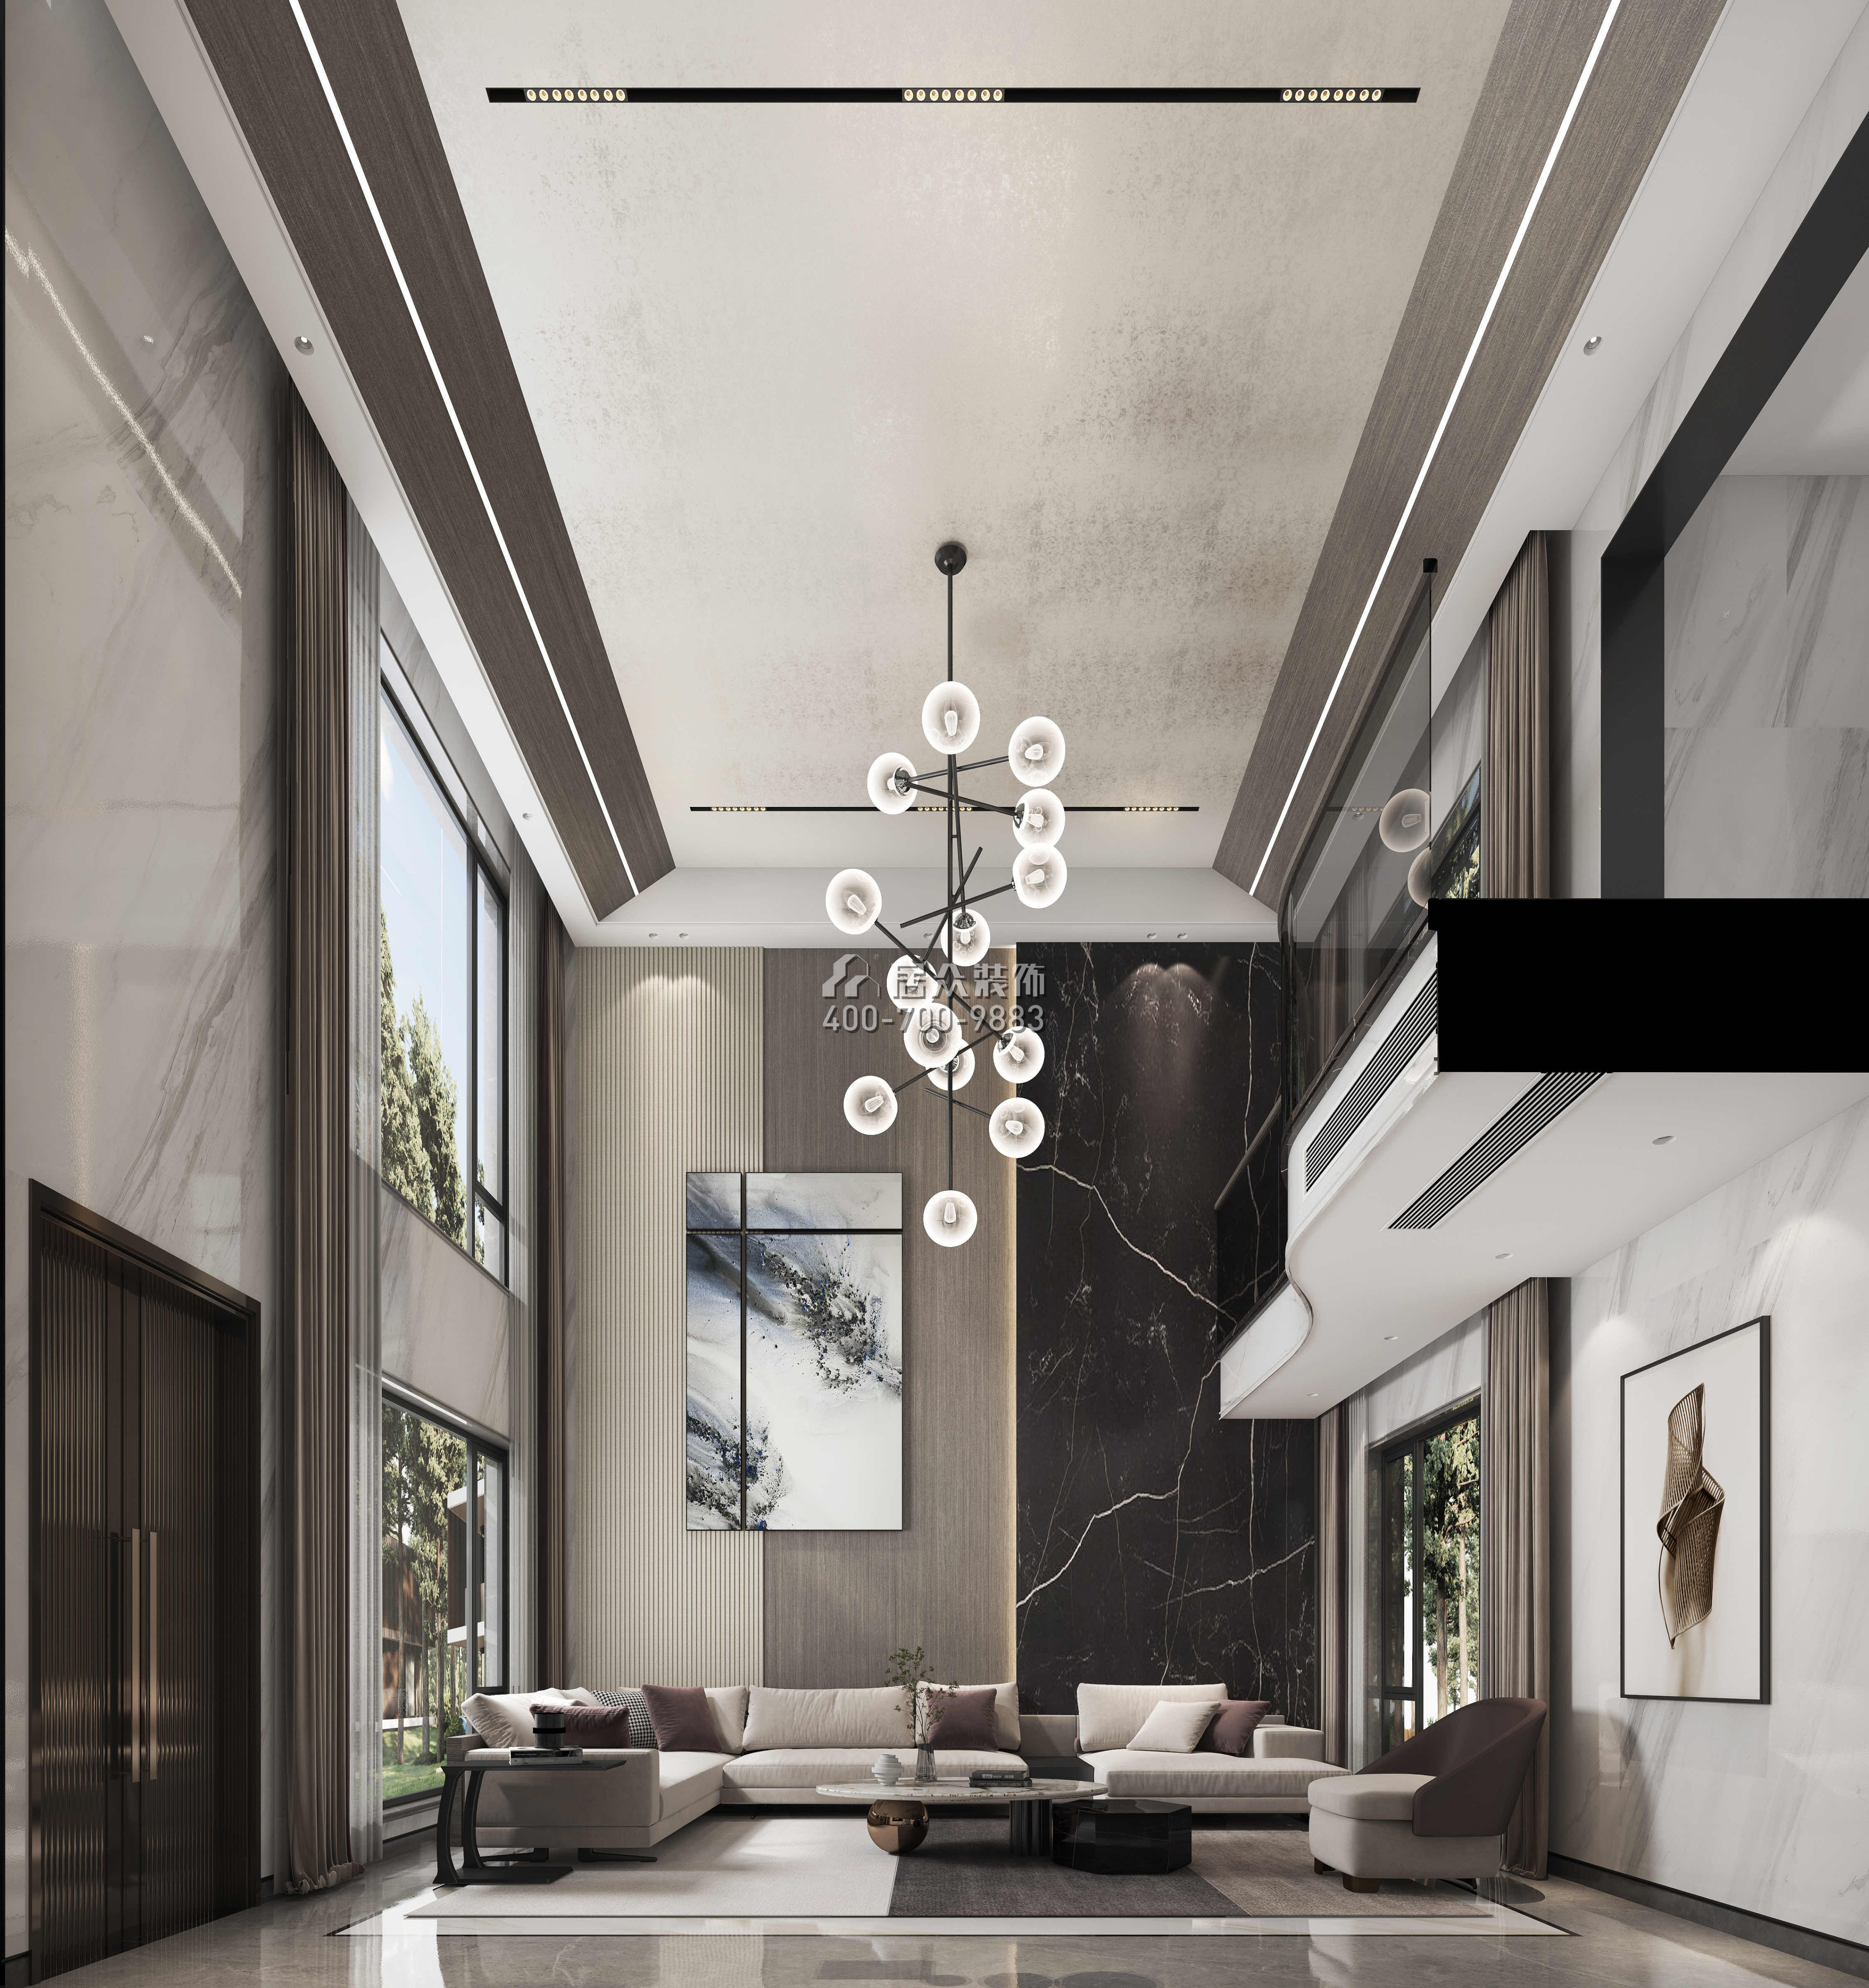 尚东紫御598平方米现代简约风格别墅户型客厅装修效果图